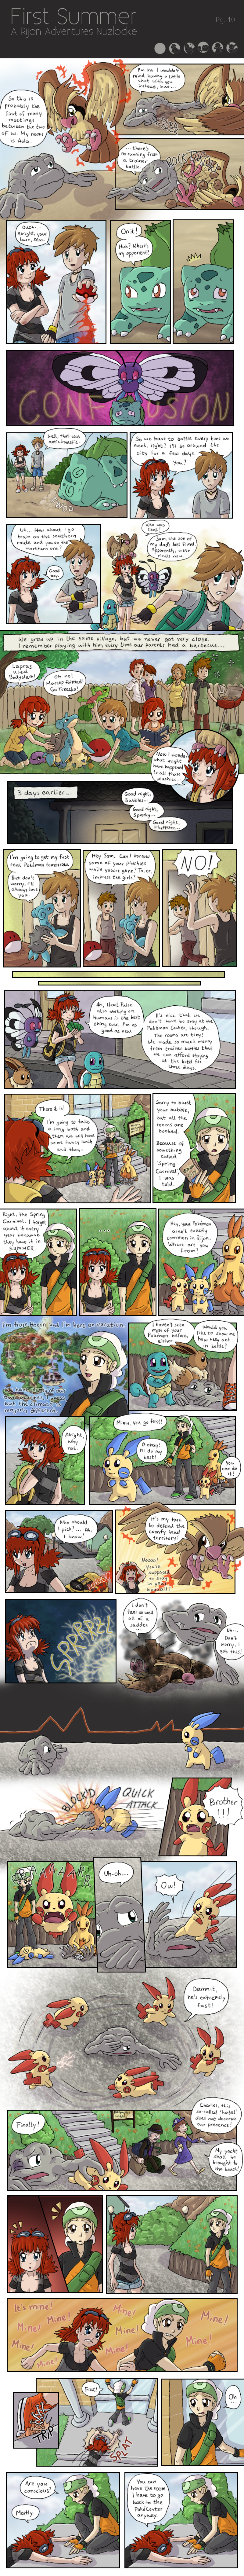 First Summer - A Rijon Adventures Nuzlocke [Pg.10]